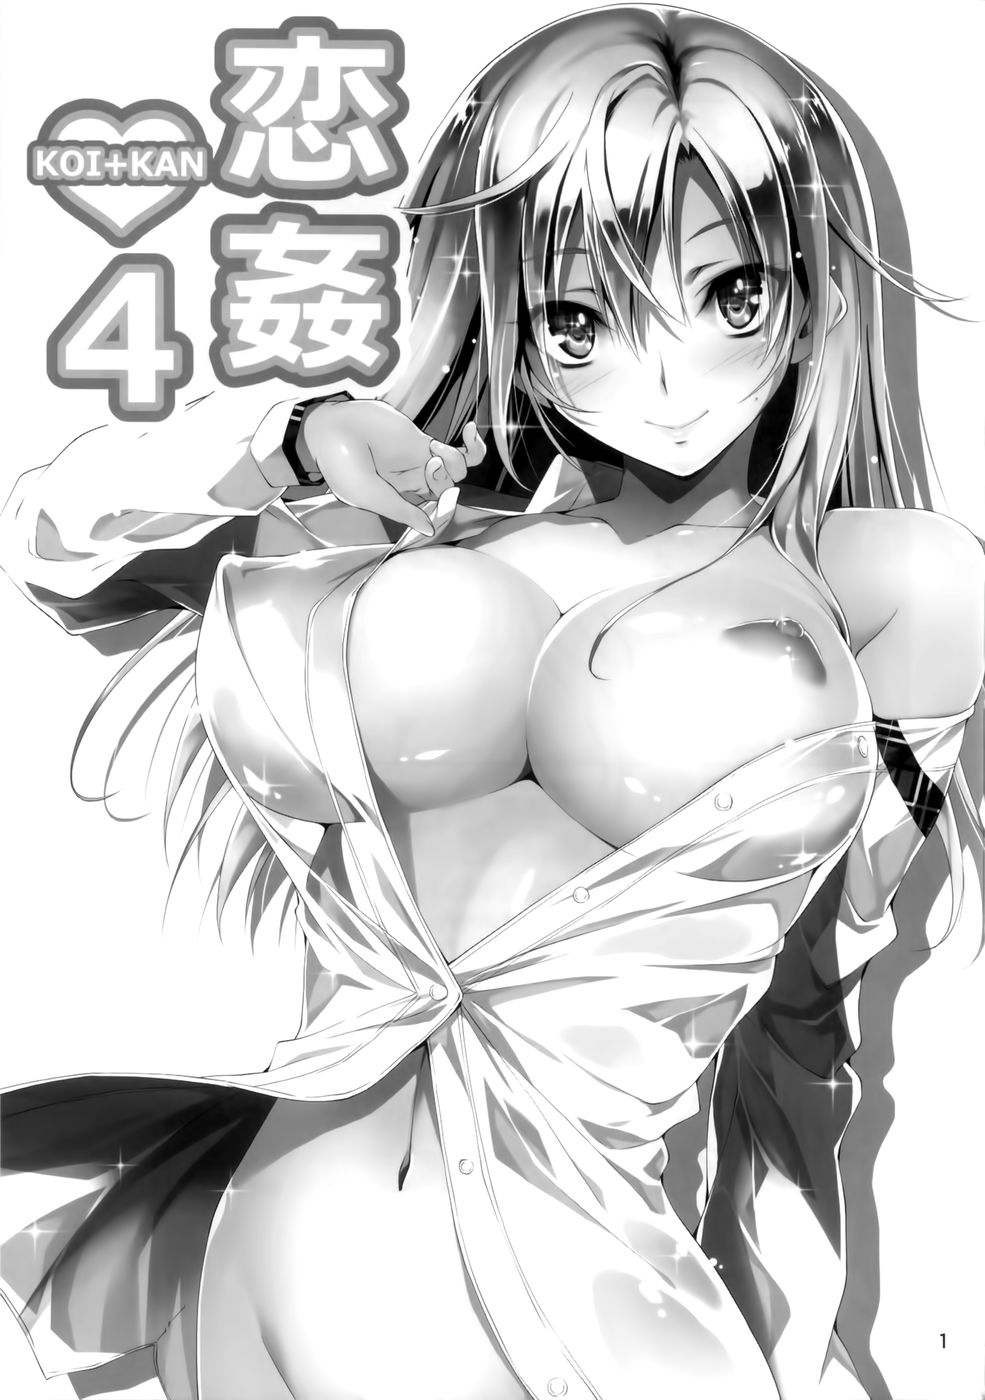 Hentai Manga Comic-Koi+Kan-Chapter 4-2